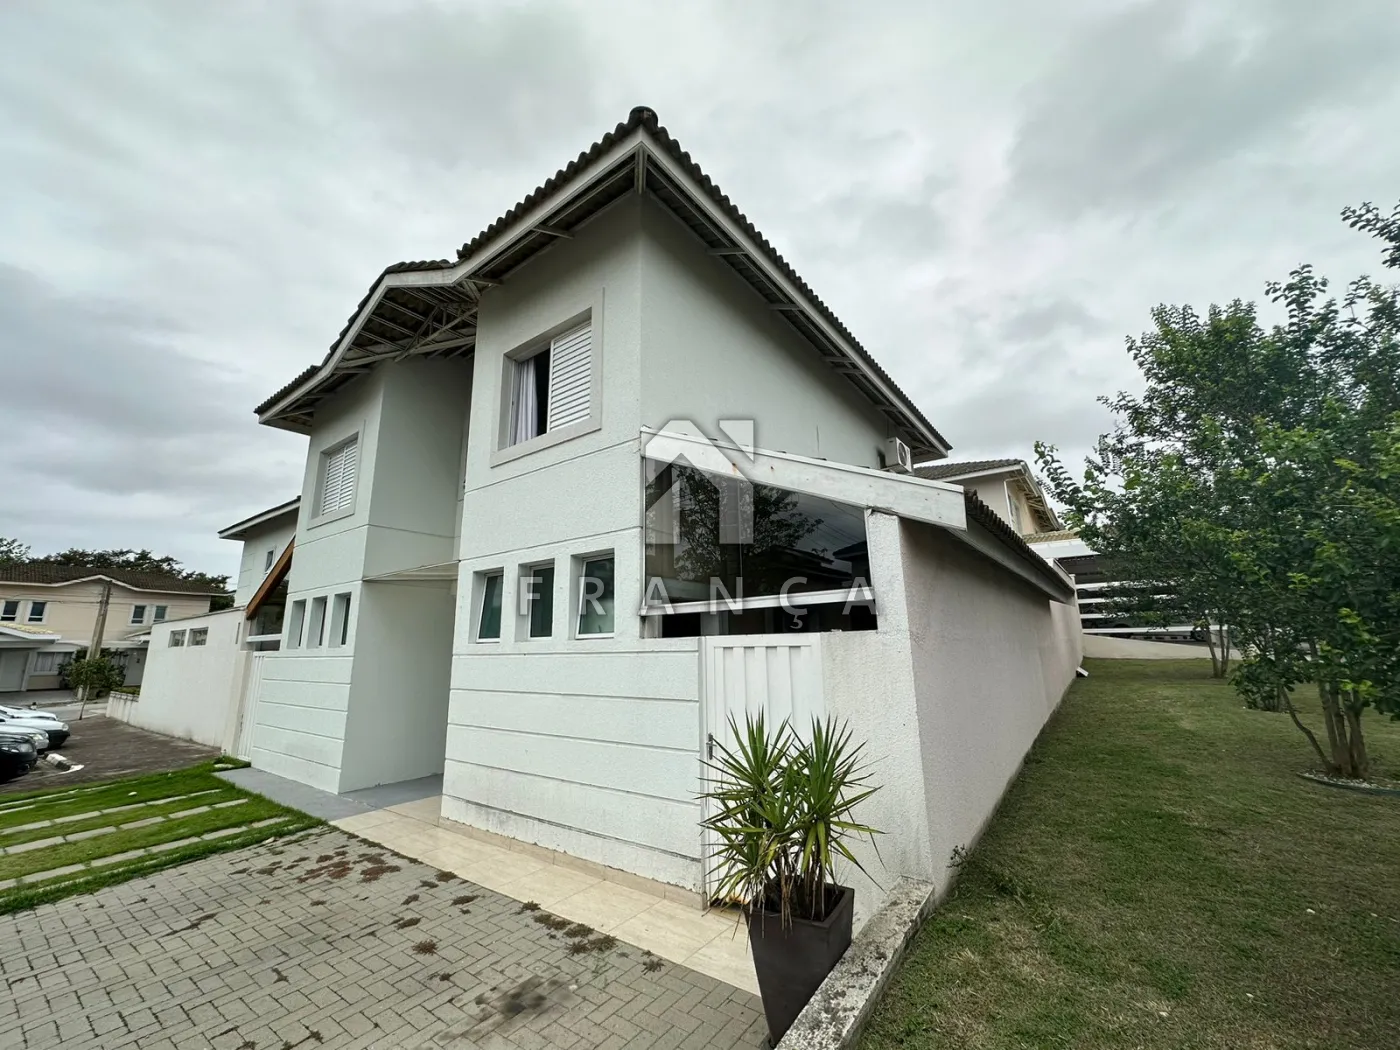 Comprar Casa / Condomínio em Jacareí R$ 650.000,00 - Foto 1